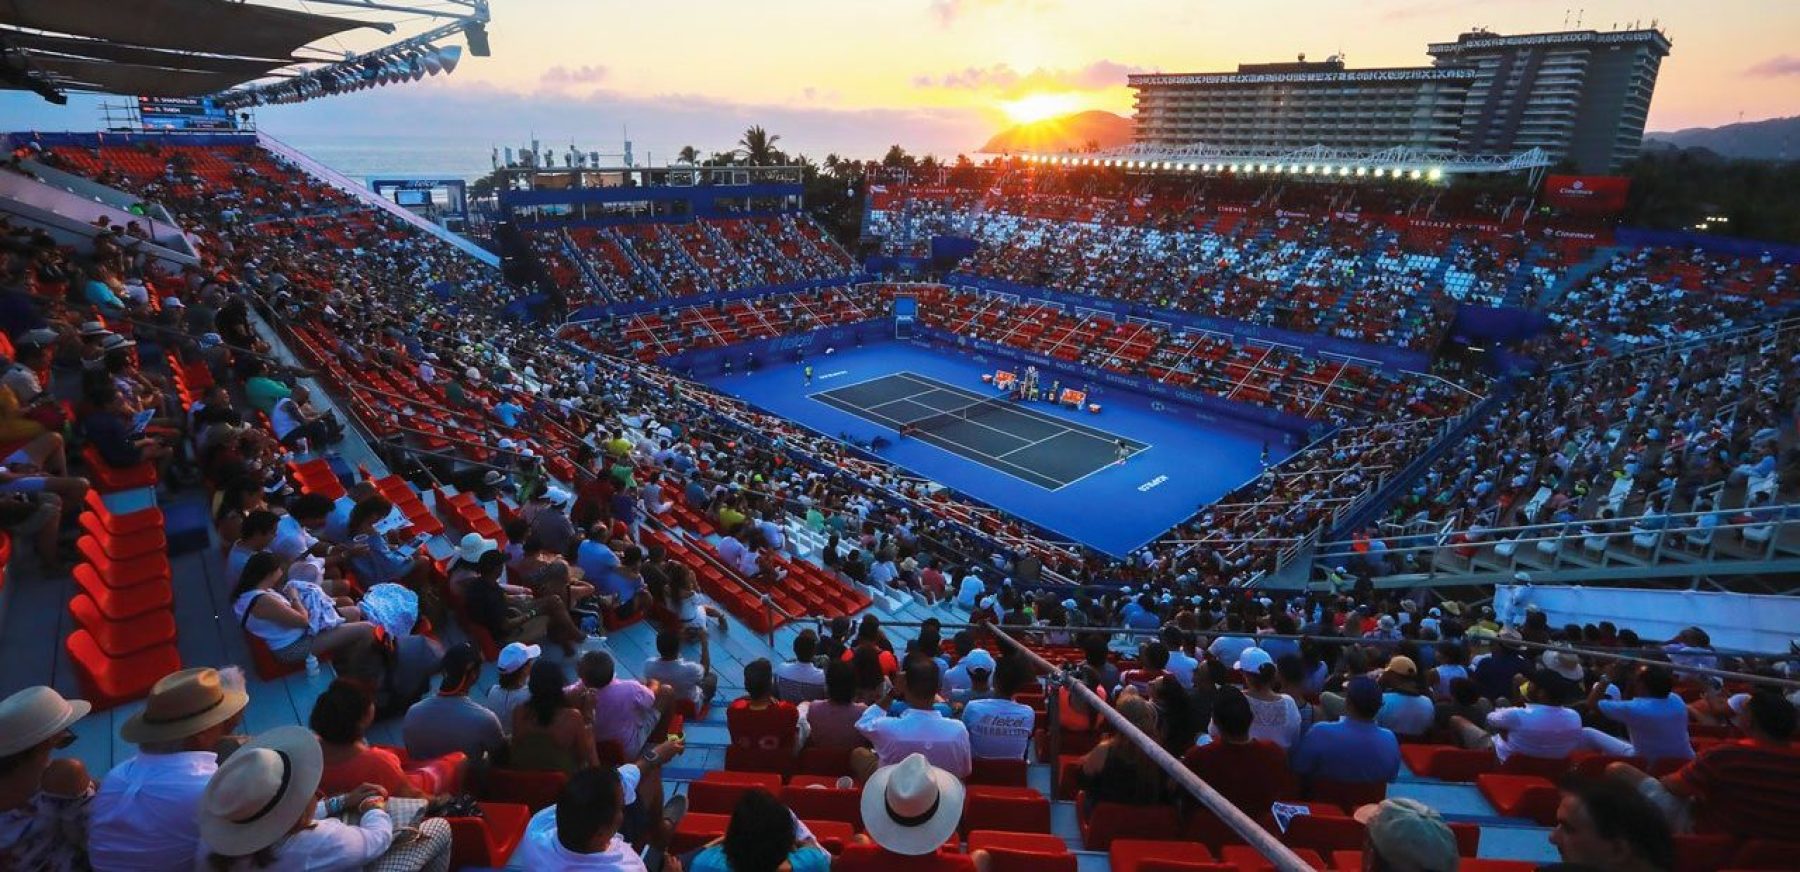 ¿Cuándo es el torneo de Tenis en Acapulco 2022?